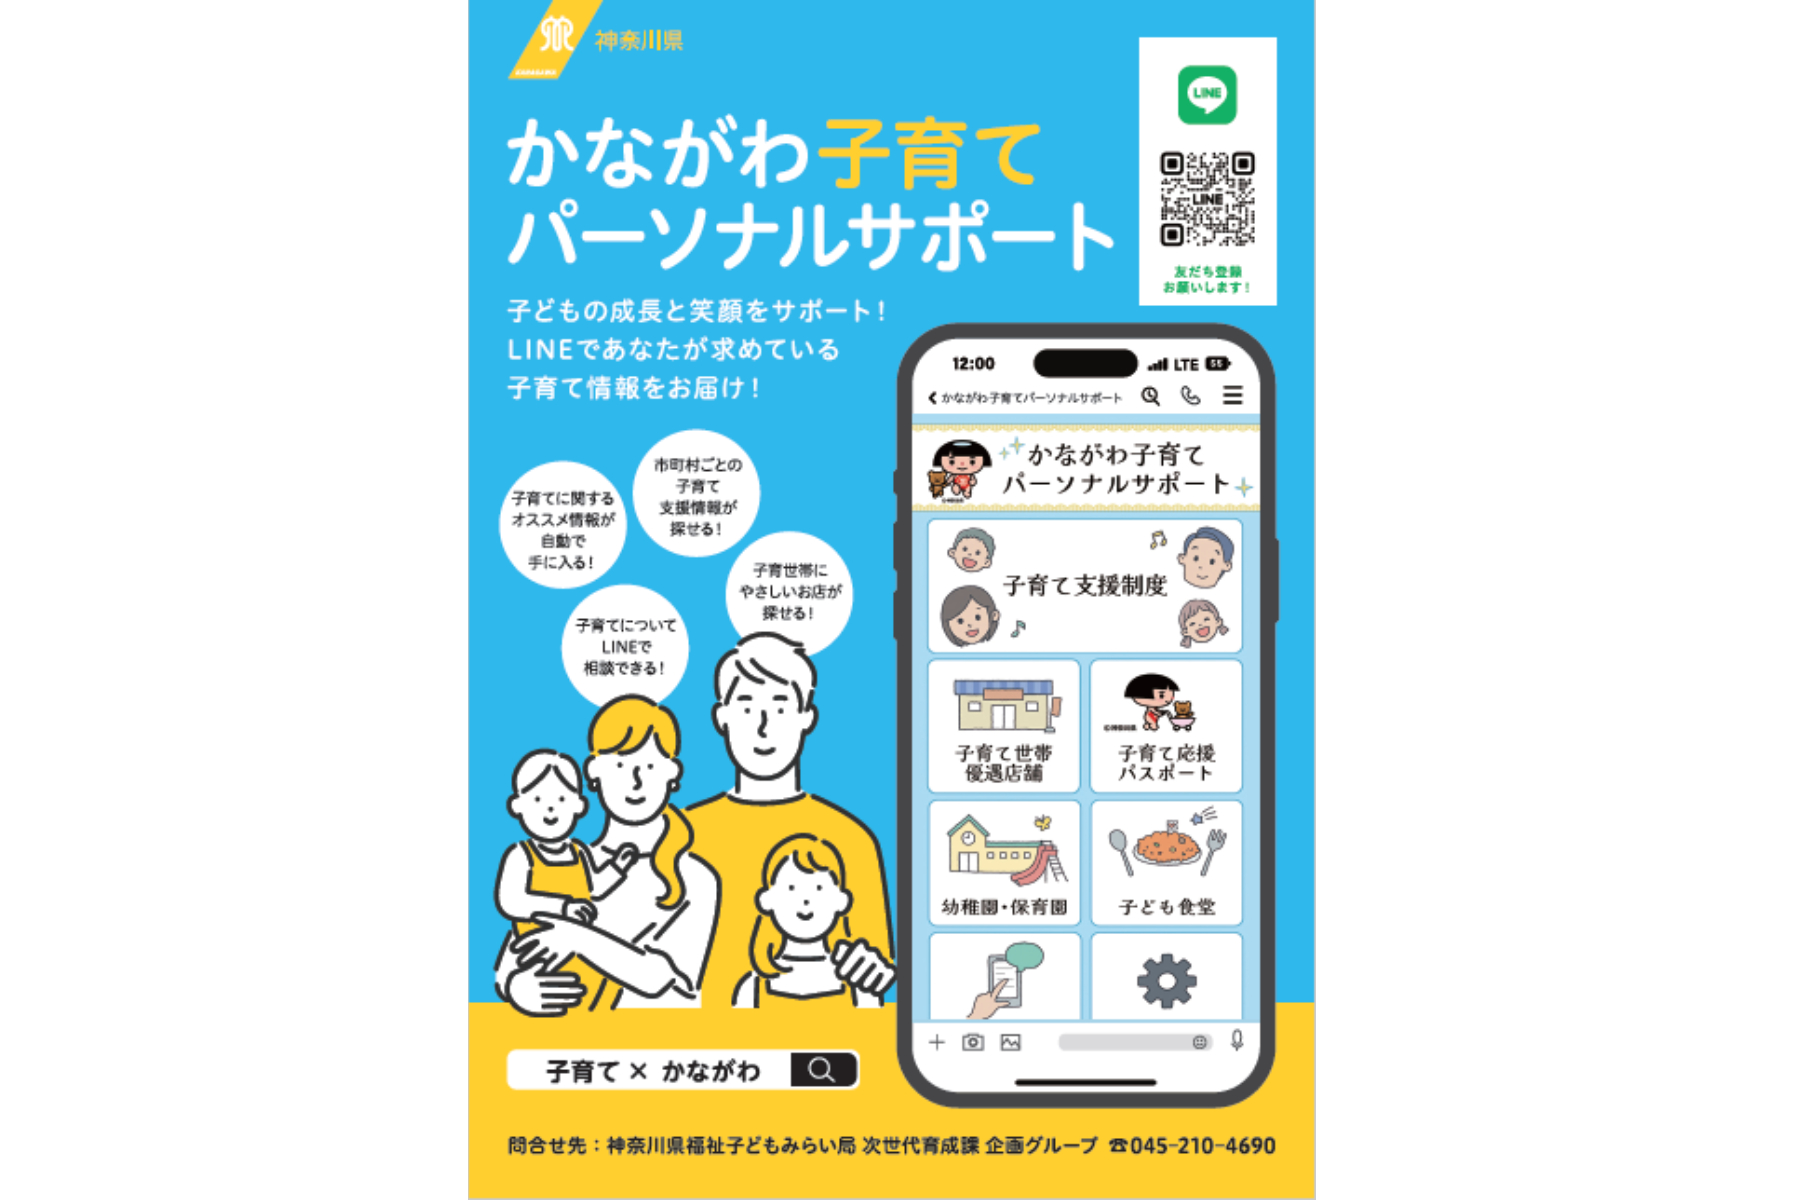 神奈川県、LINEを活用した子育て支援サービスをリリース[ニュース]